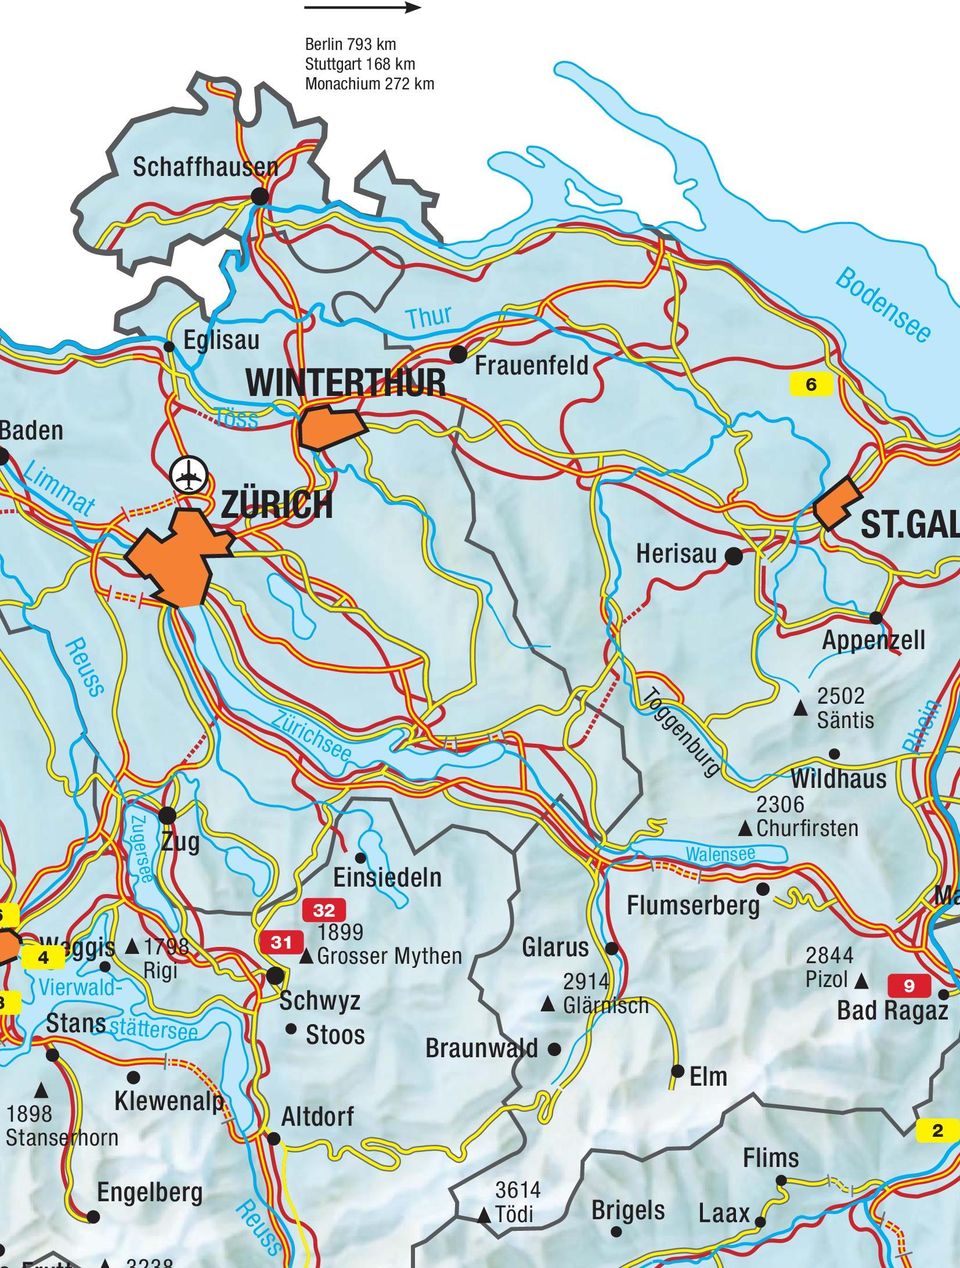 GAL Reuss Appenzell Zürichsee Toggenburg 2502 Säntis Rhein Weggis 4 Vierwald- Stans Zugersee Zug 1798 Rigi stättersee